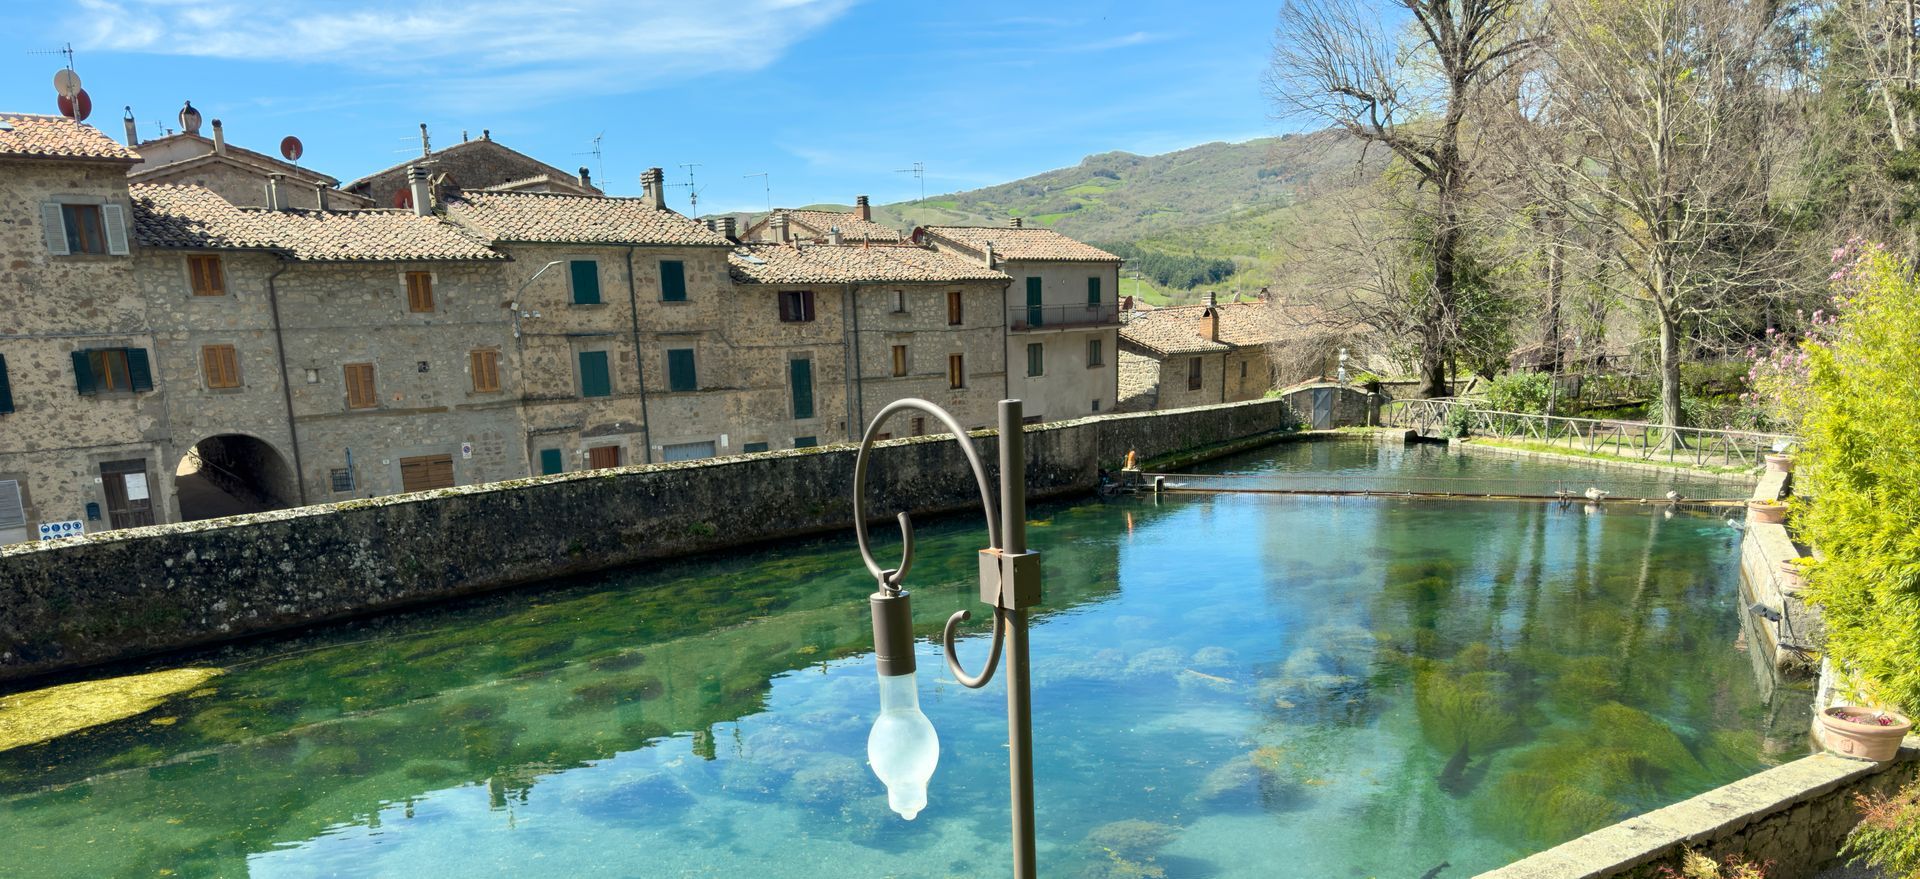 Santa Fiora: il borgo con la peschiera dalle acque limpide da vedere in Toscana